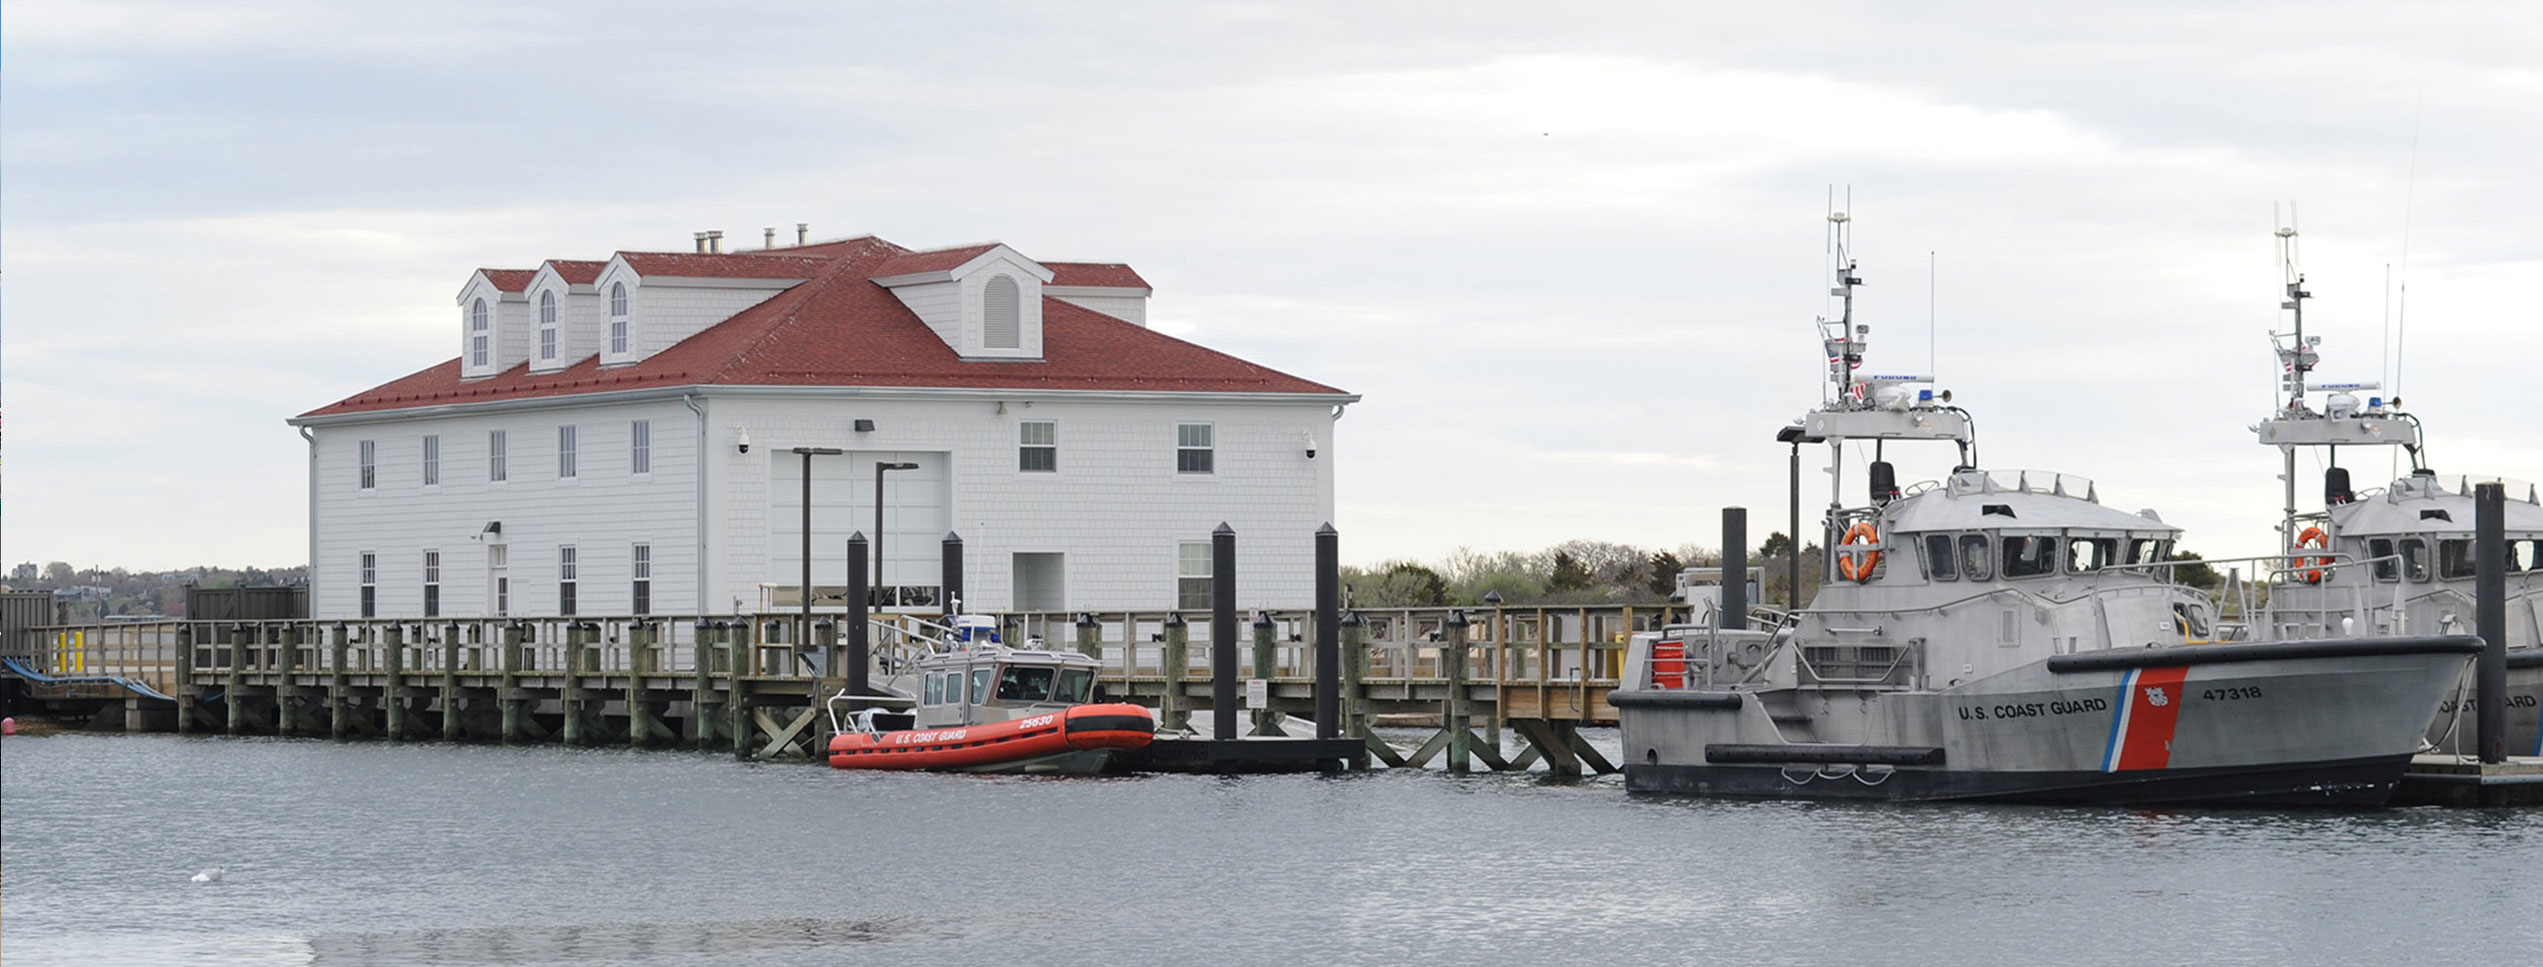 US Coast Guard Menemsha Boathouse